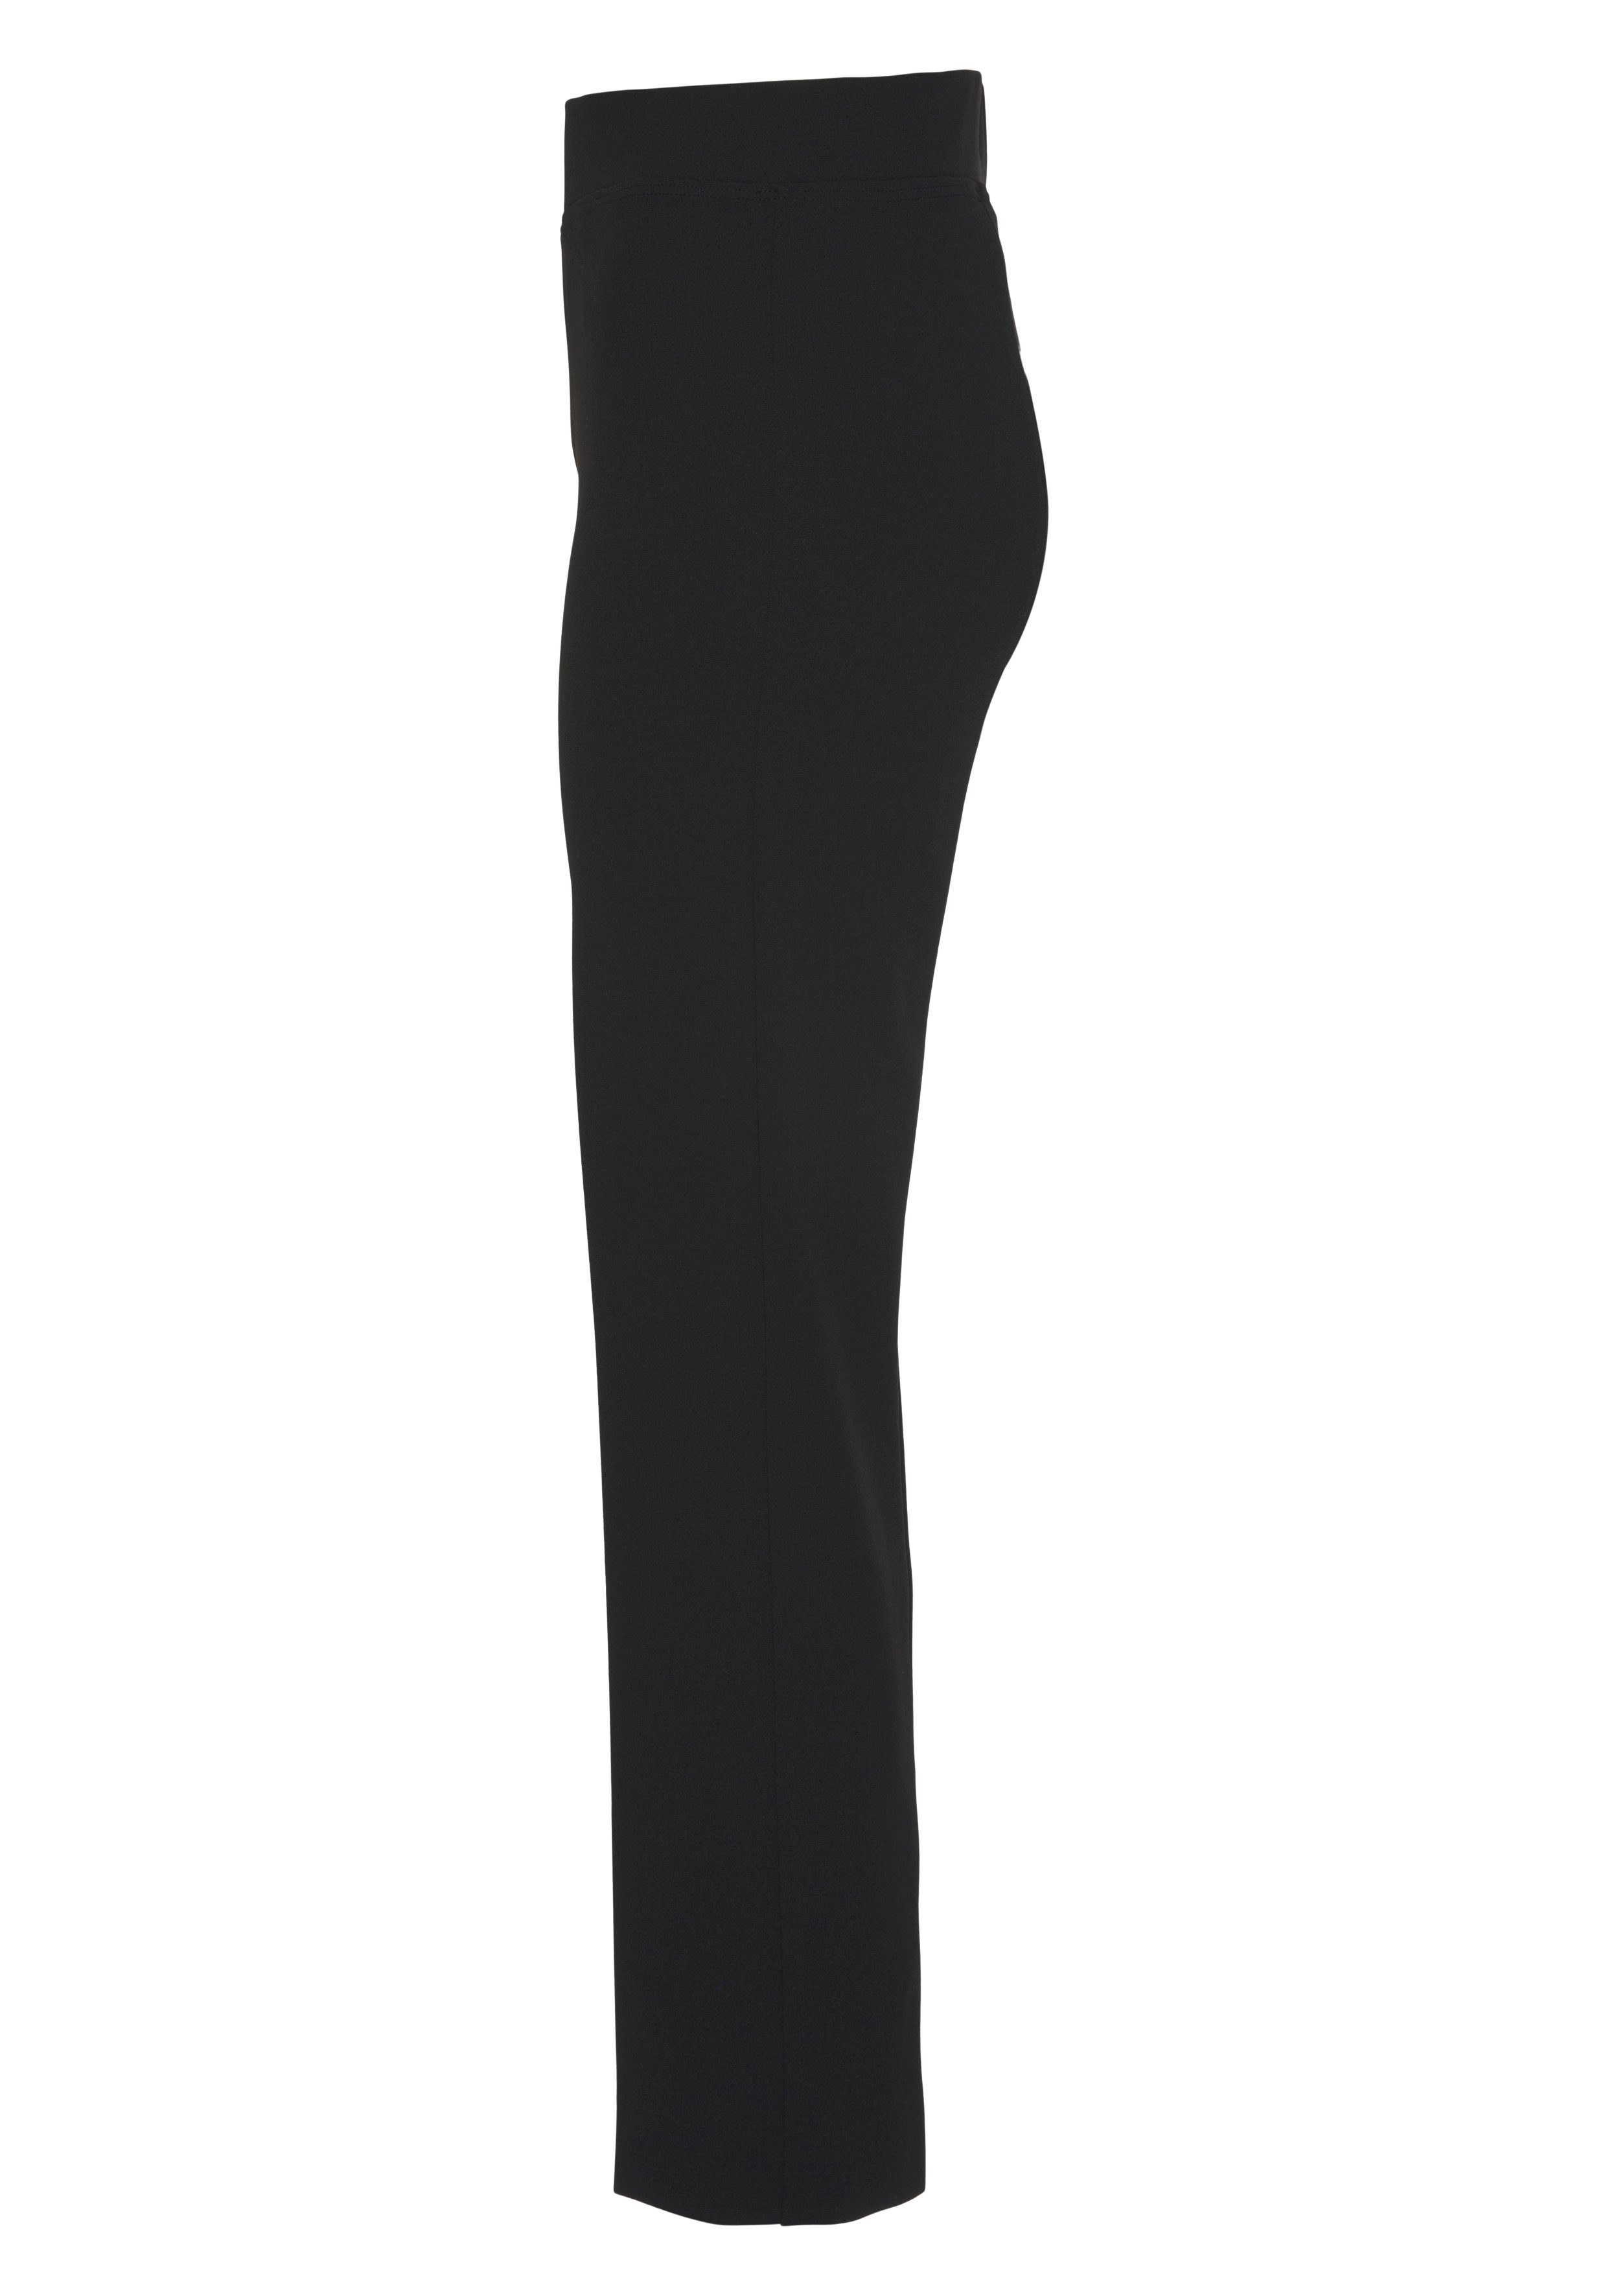 HERMANN in mit Collection Stretch-Hose Bügelfalte LANGE schwarz eleganter Schlupfform